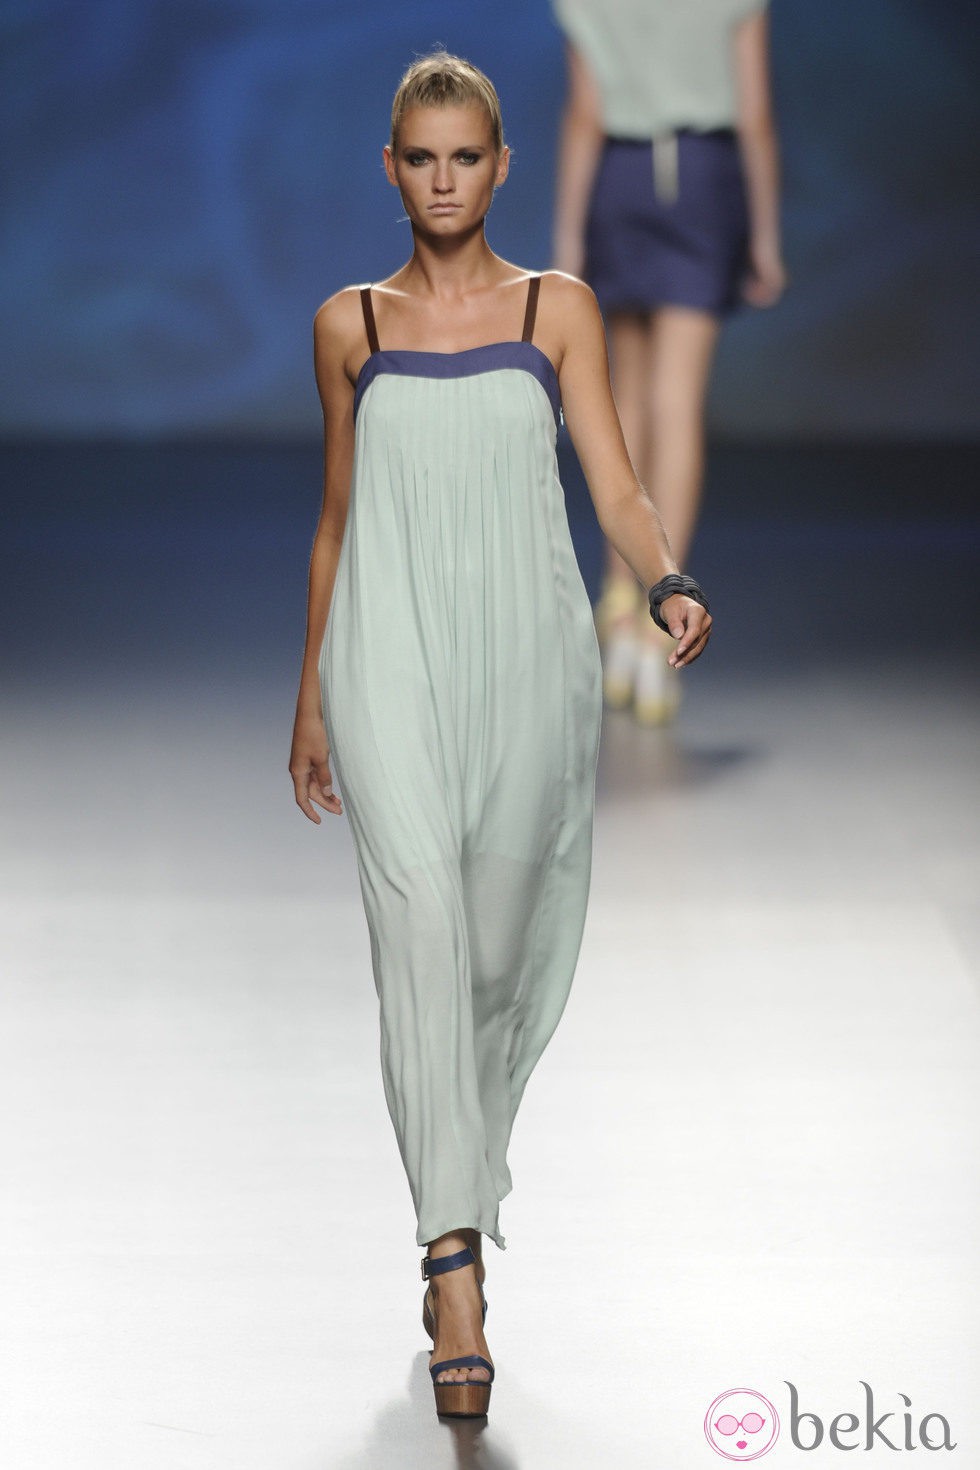 Vestido largo turquesa claro con detalles en el escote azul marino de la colección primavera/verano 2013 de Sara Coleman